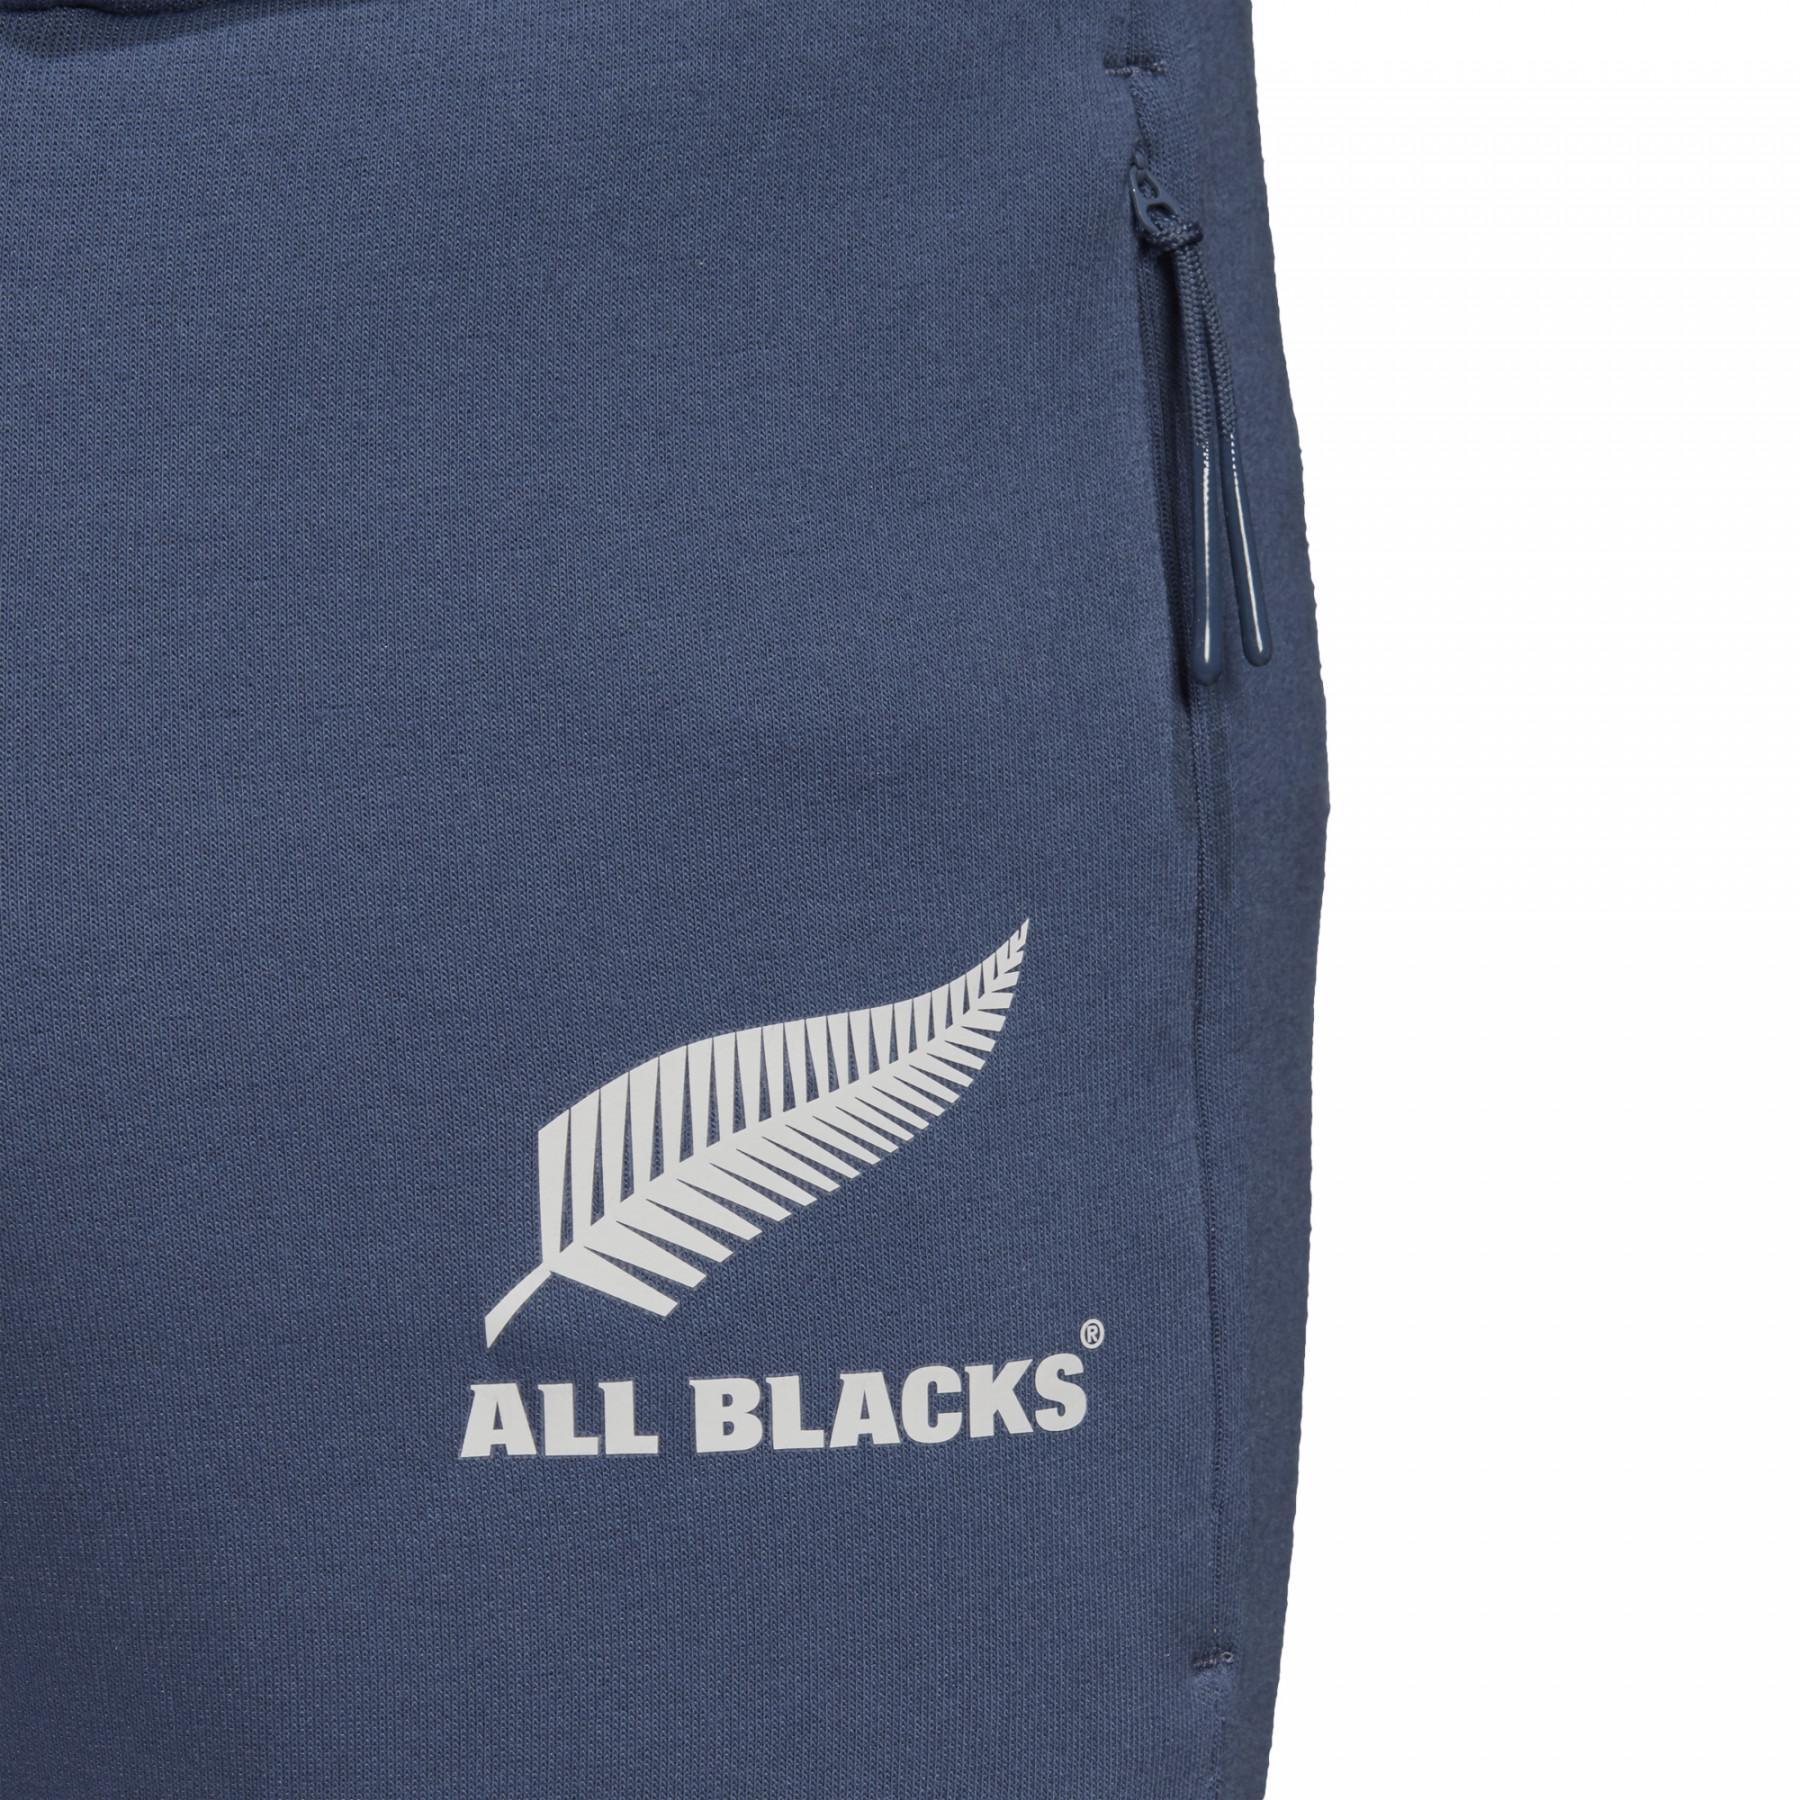 Spodnie przedmeczowe All Blacks 2020